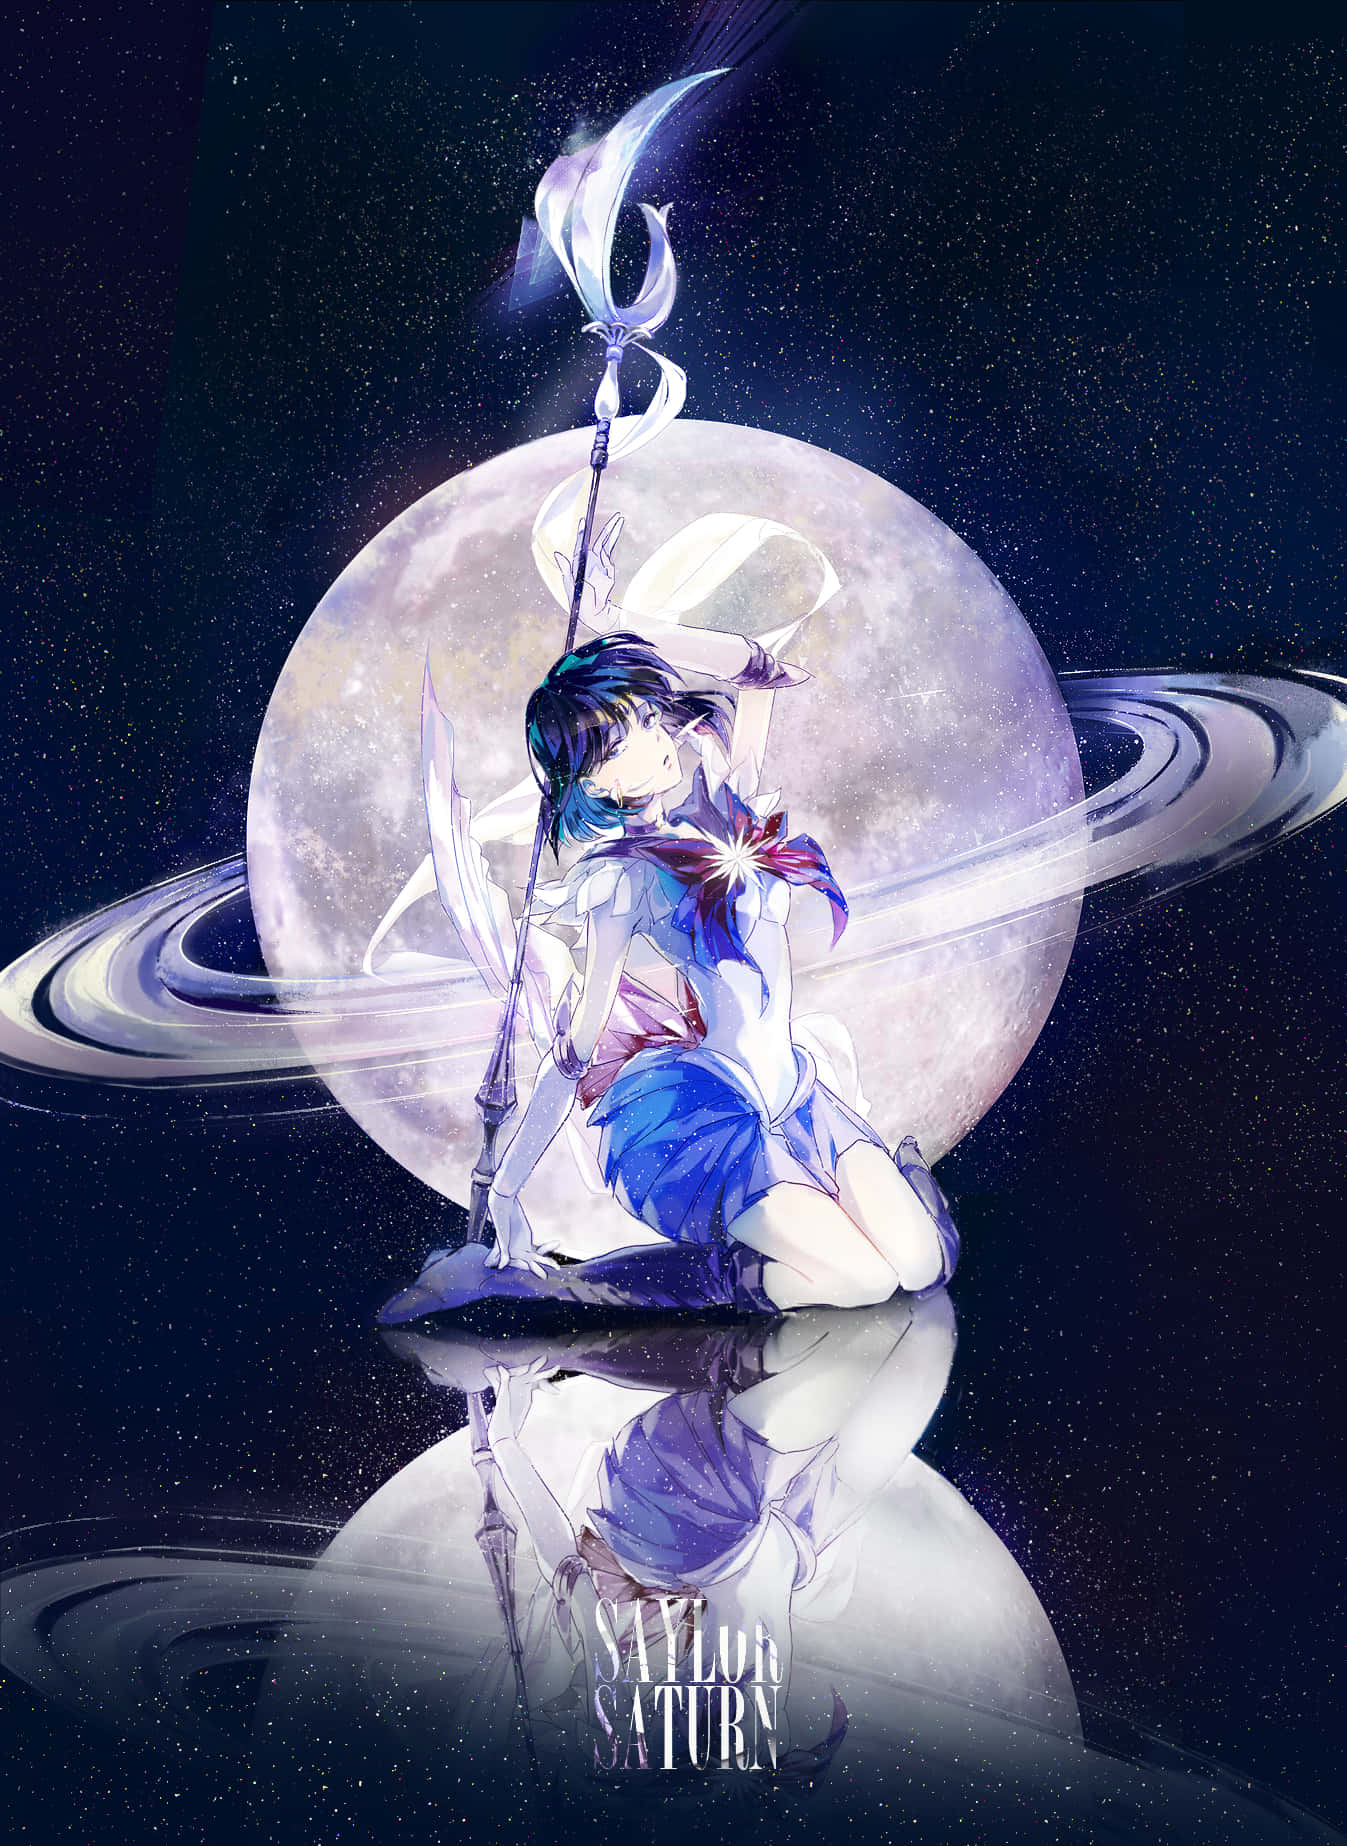 Usurper Of Silence And Destruction, Sailor Saturn! Background